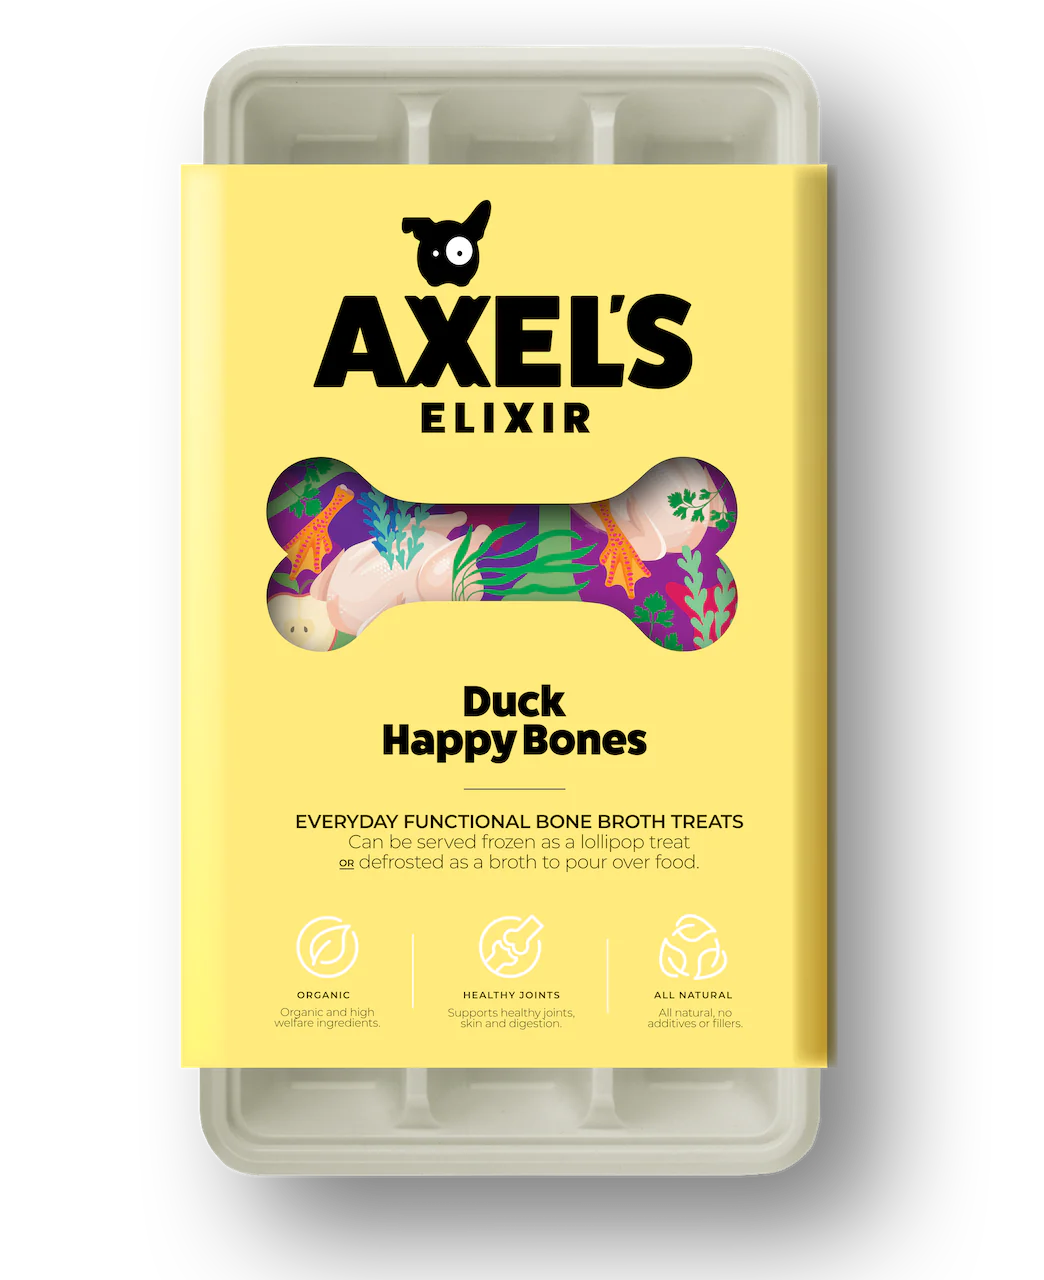 Axels Elixir Duck Happy Bones